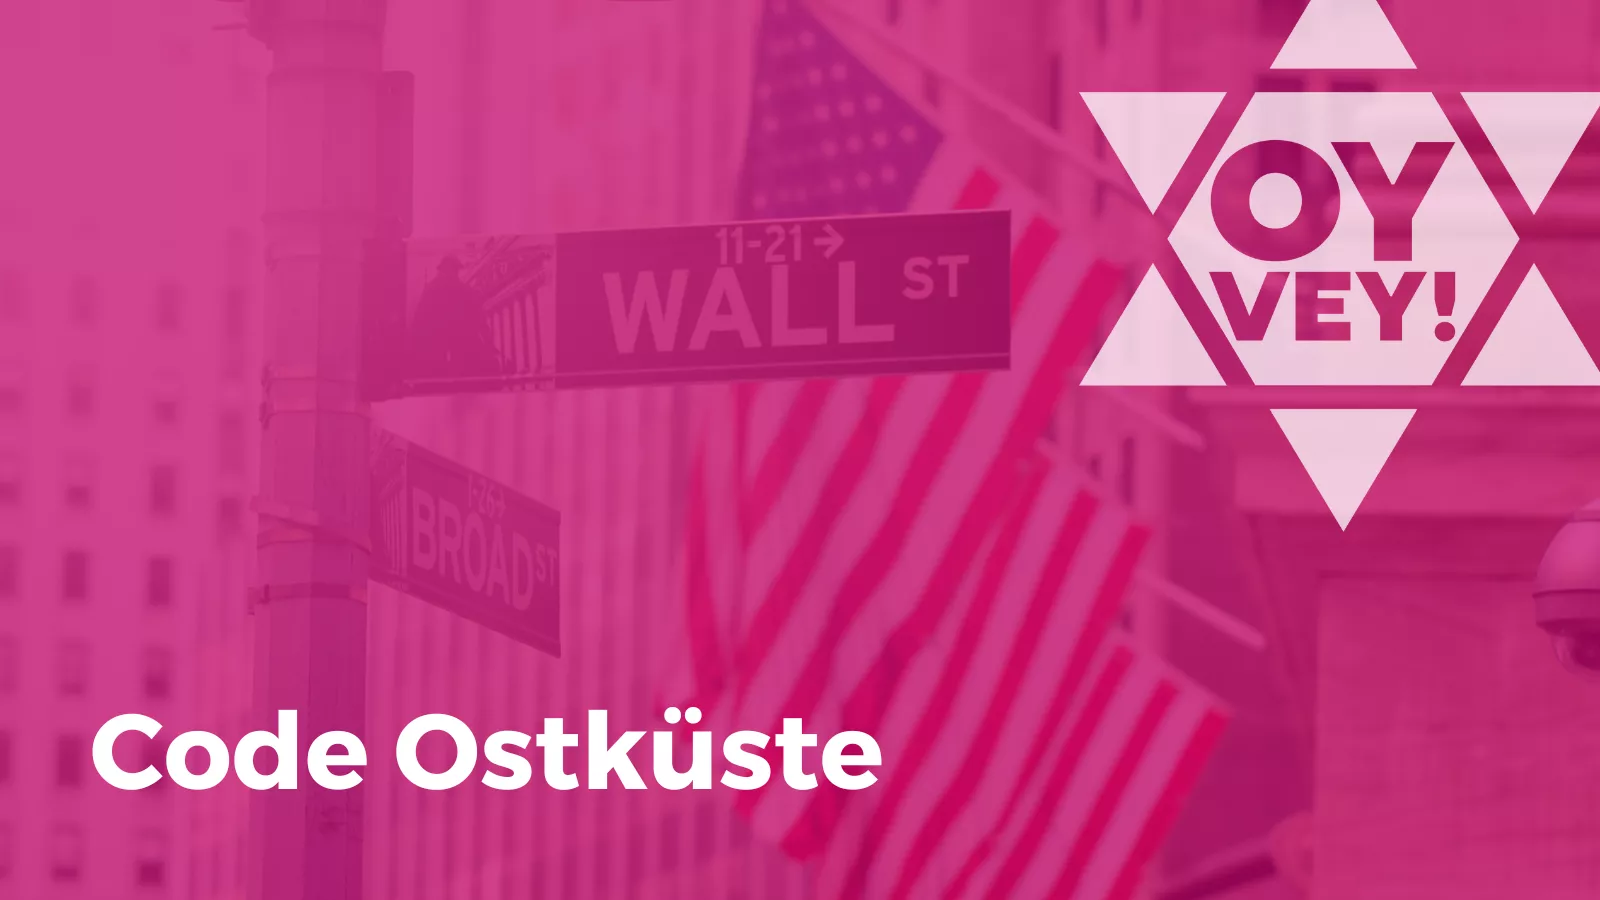 Bild des Straßenschildes "Wall Street" in New York City mit amerikanischer Flagge im Hintergrund. Titel: Code Ostküste